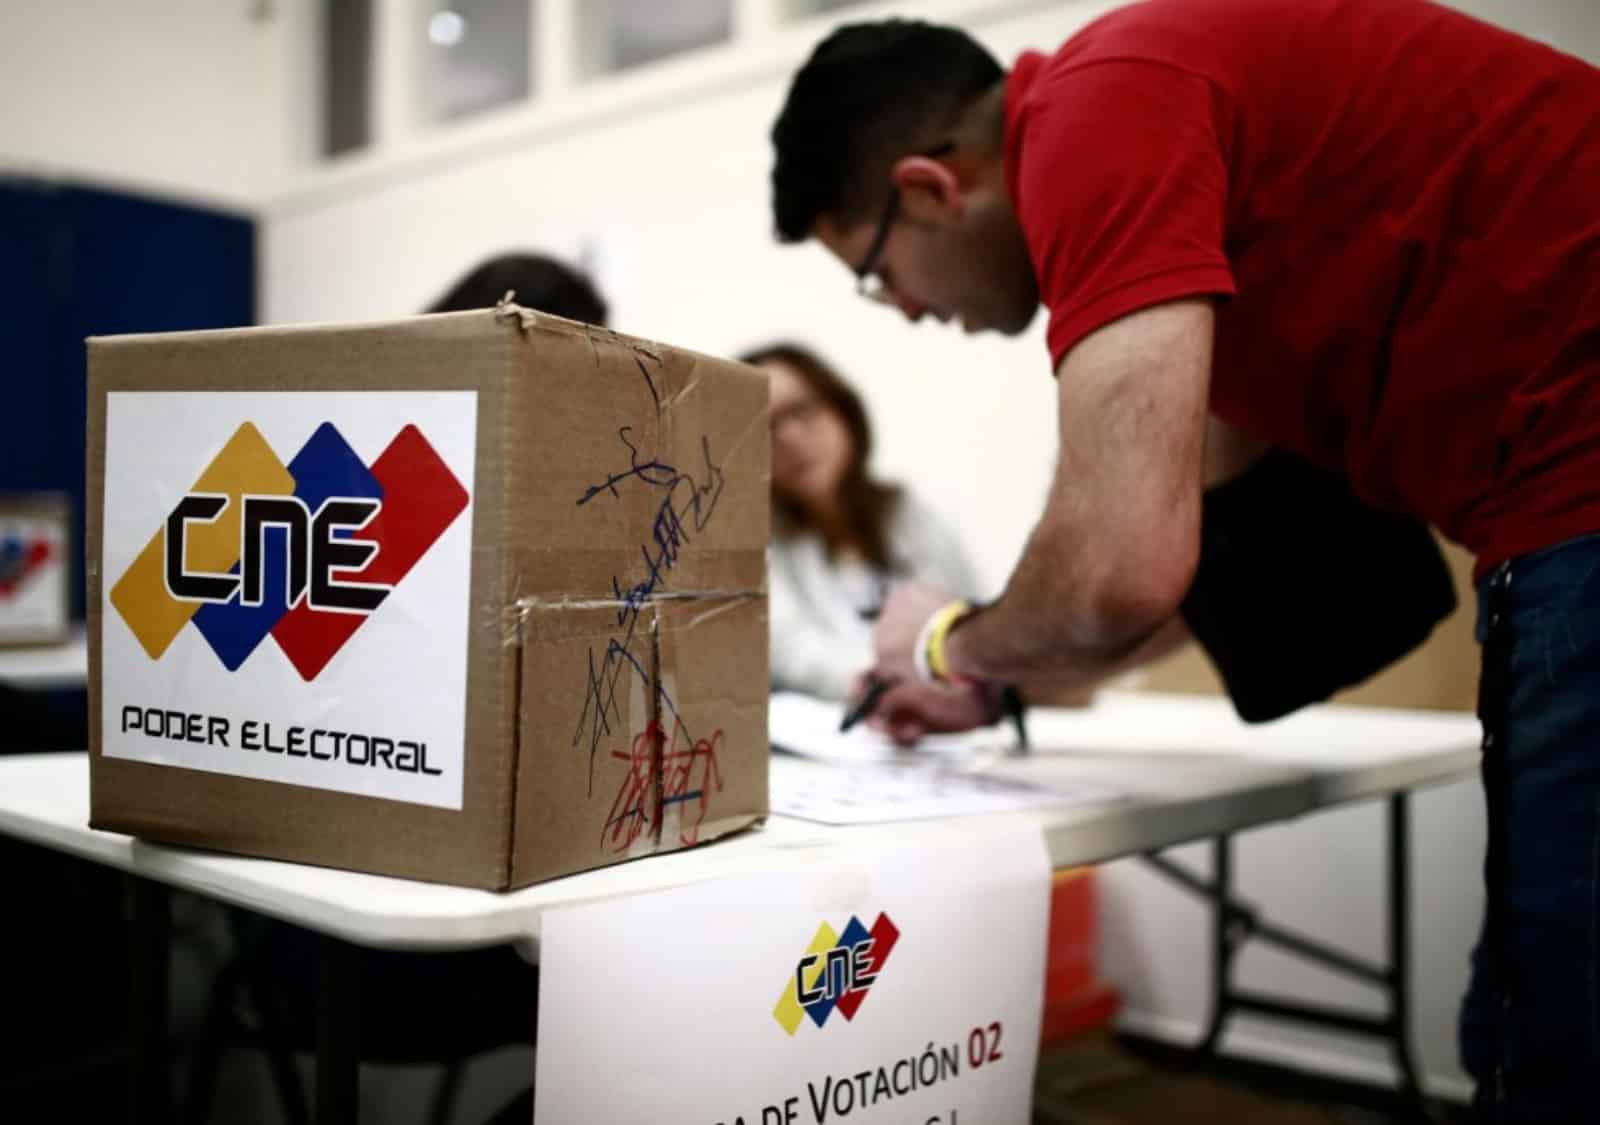 El simulacro de votación corresponde a unas de las 94 actividades previstas en el Cronograma Electoral para las Elecciones Regionales y Municipales 2021, según el CNE.